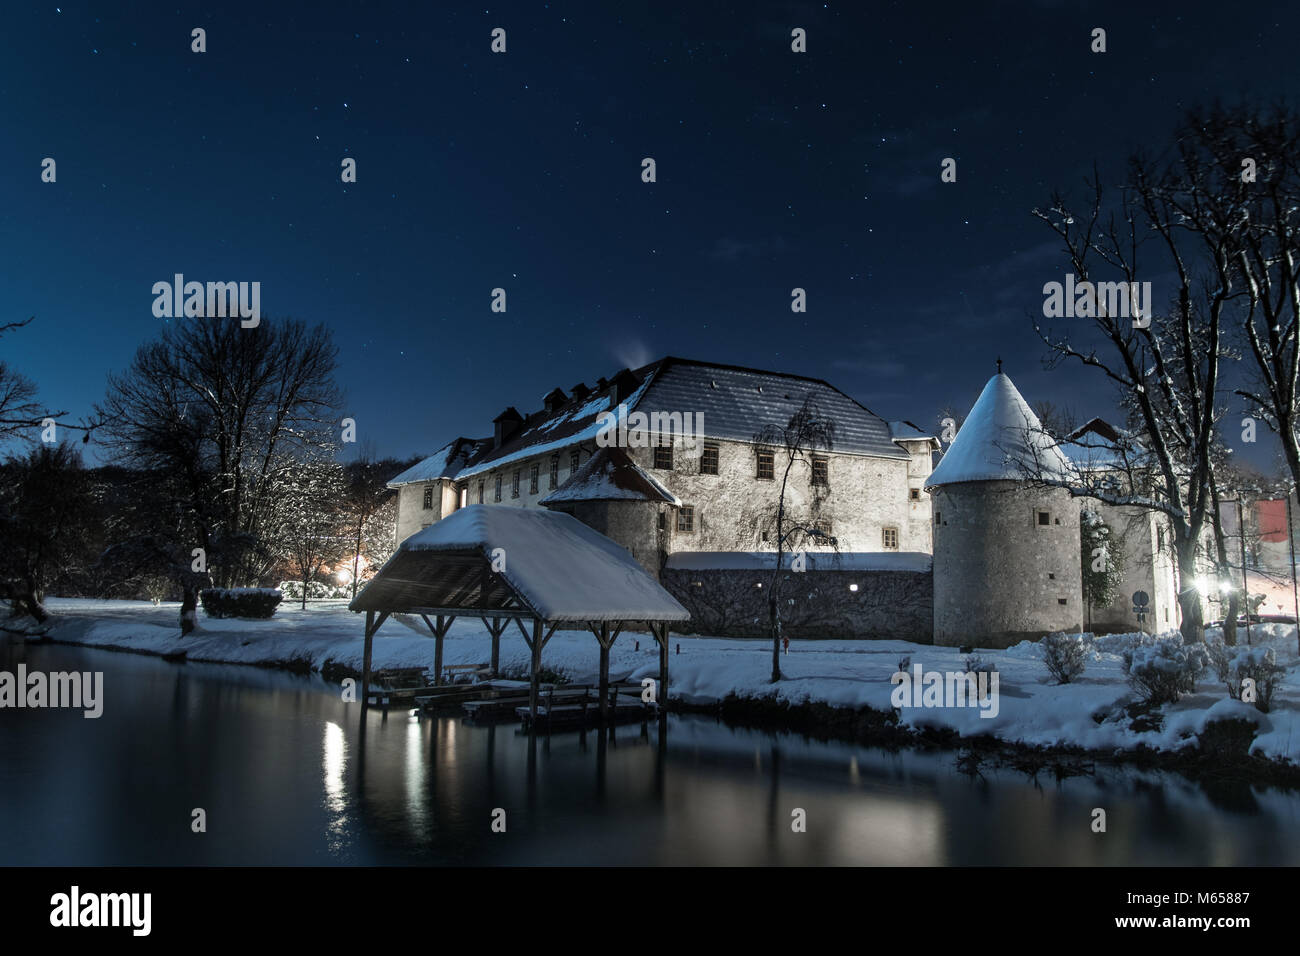 Antico castello su un isola del fiume di notte durante l'inverno. Le stelle sono visibili su una chiara notte. Foto Stock